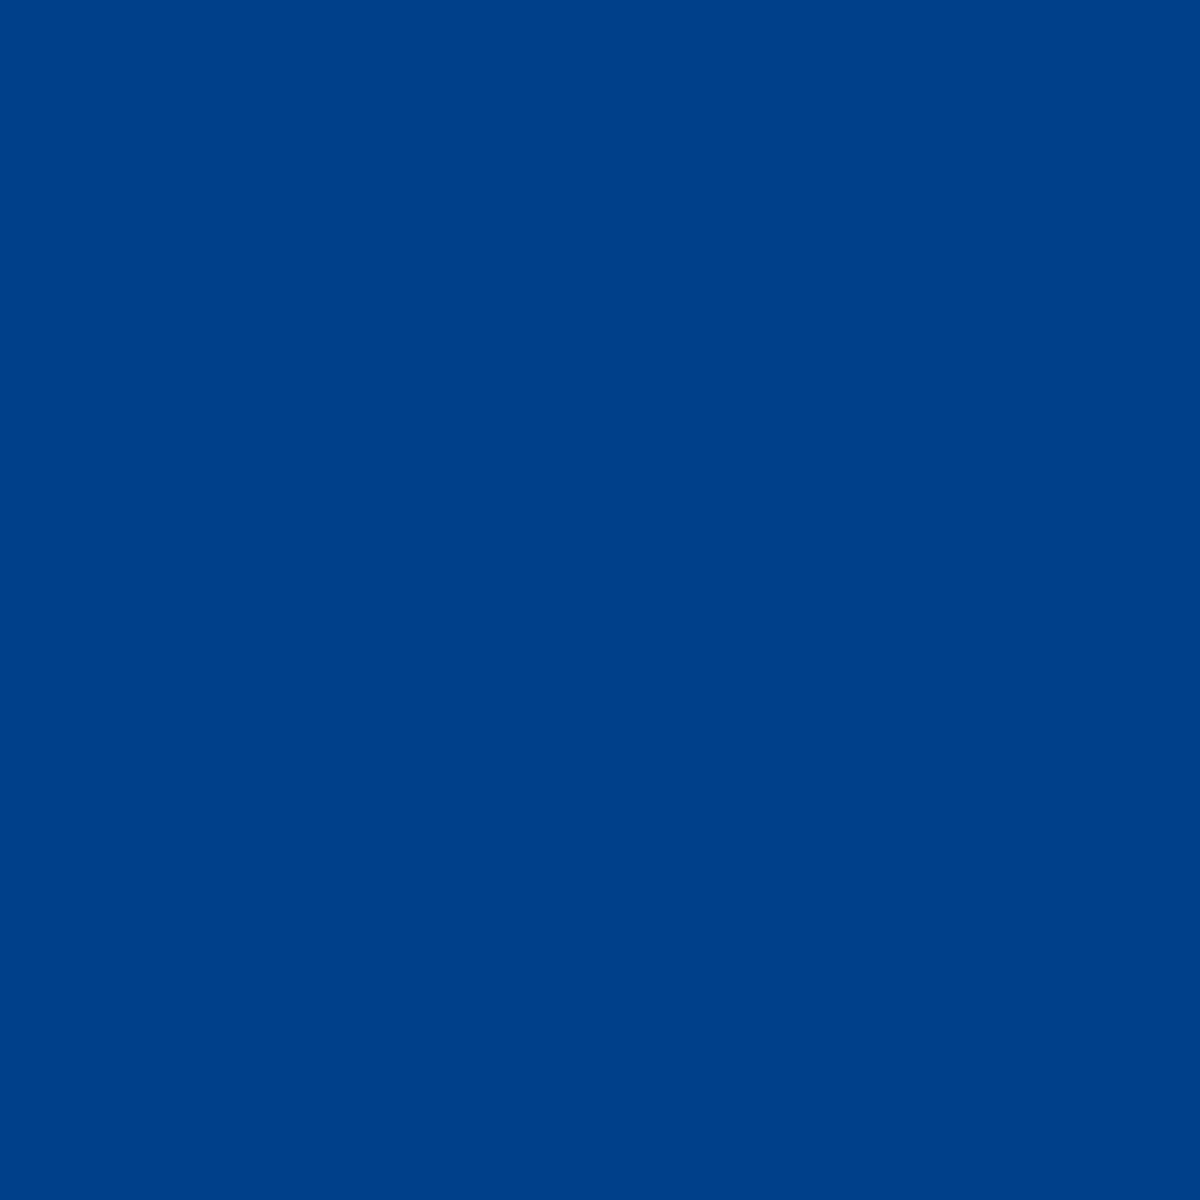 3M Envision transparante kleurenfolie 3730-97L Bristol blauw 1,22m x 45,7m